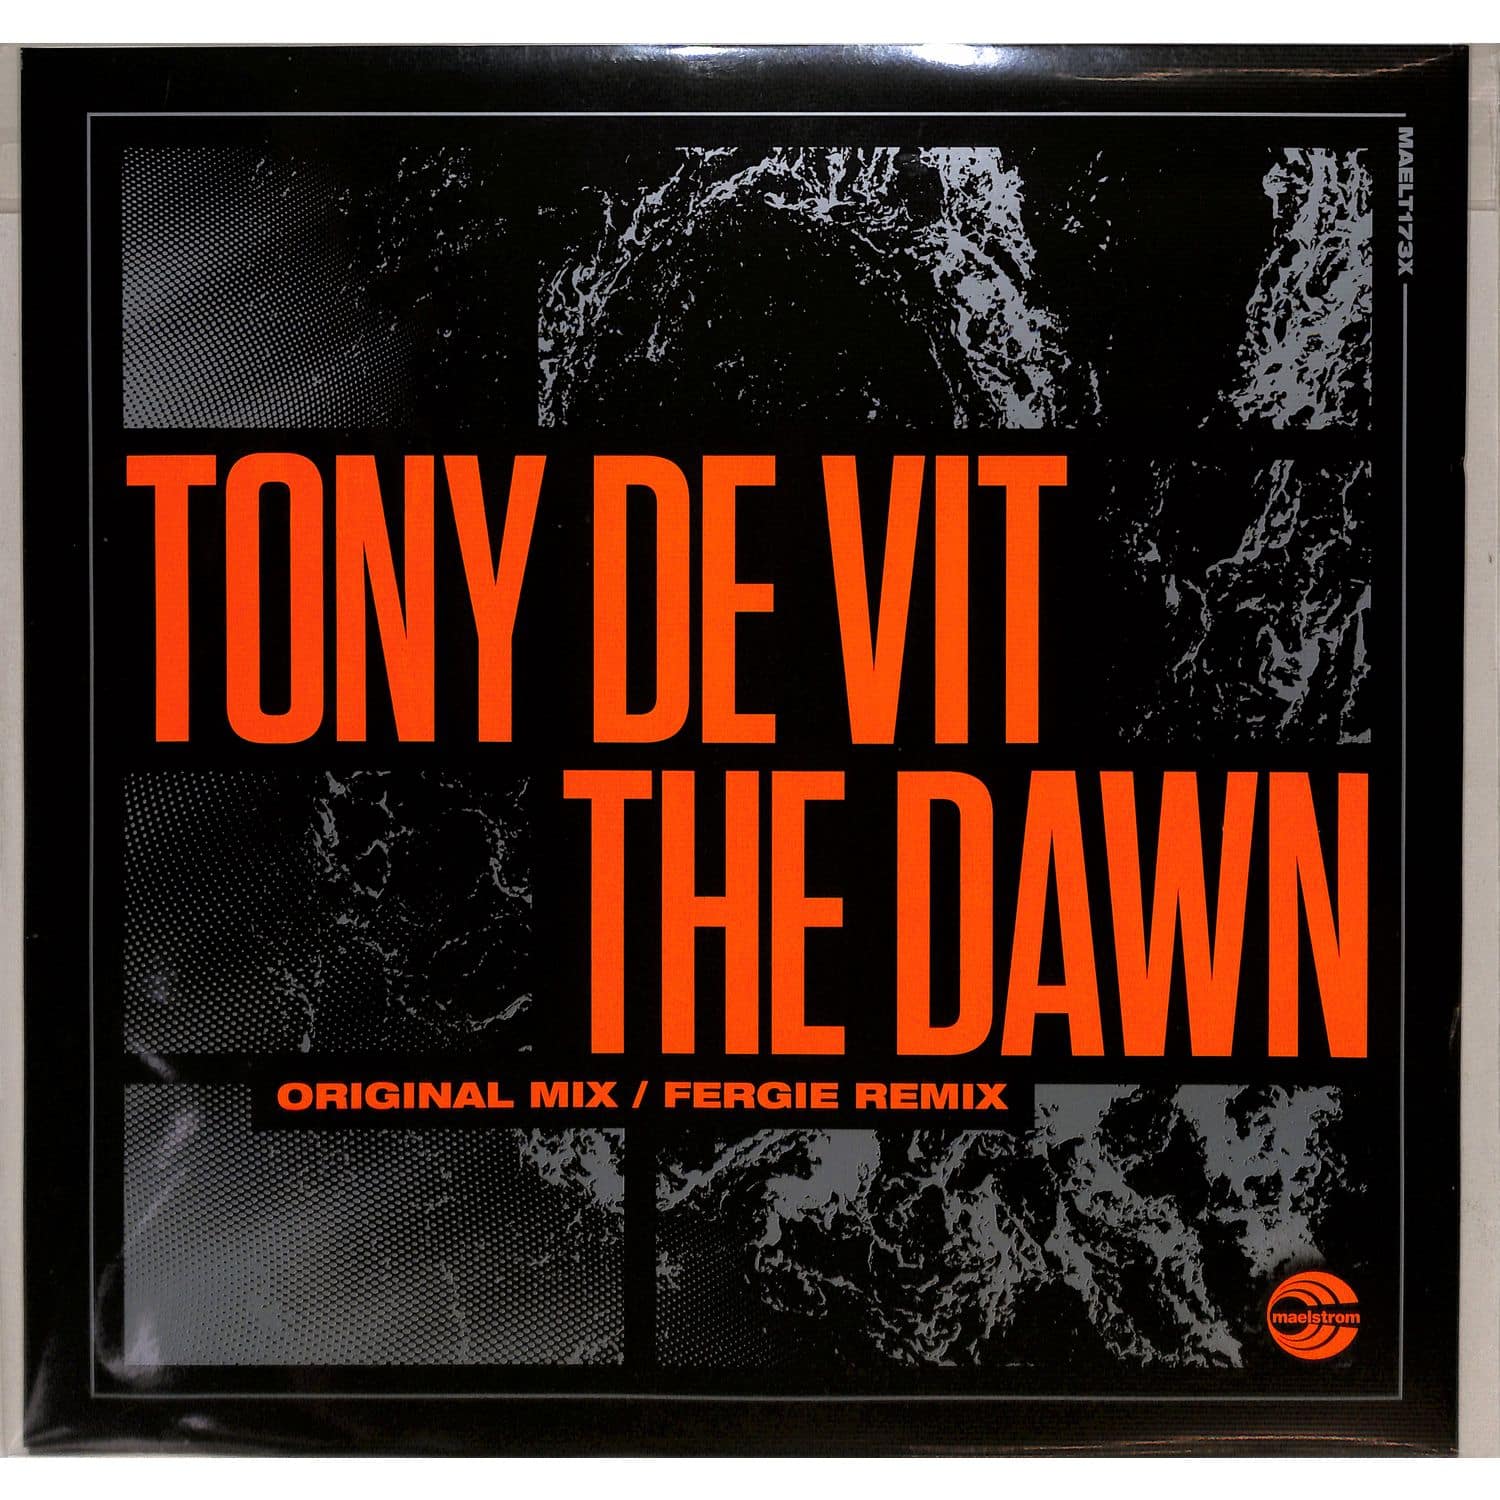 Tony De Vit - THE DAWN 